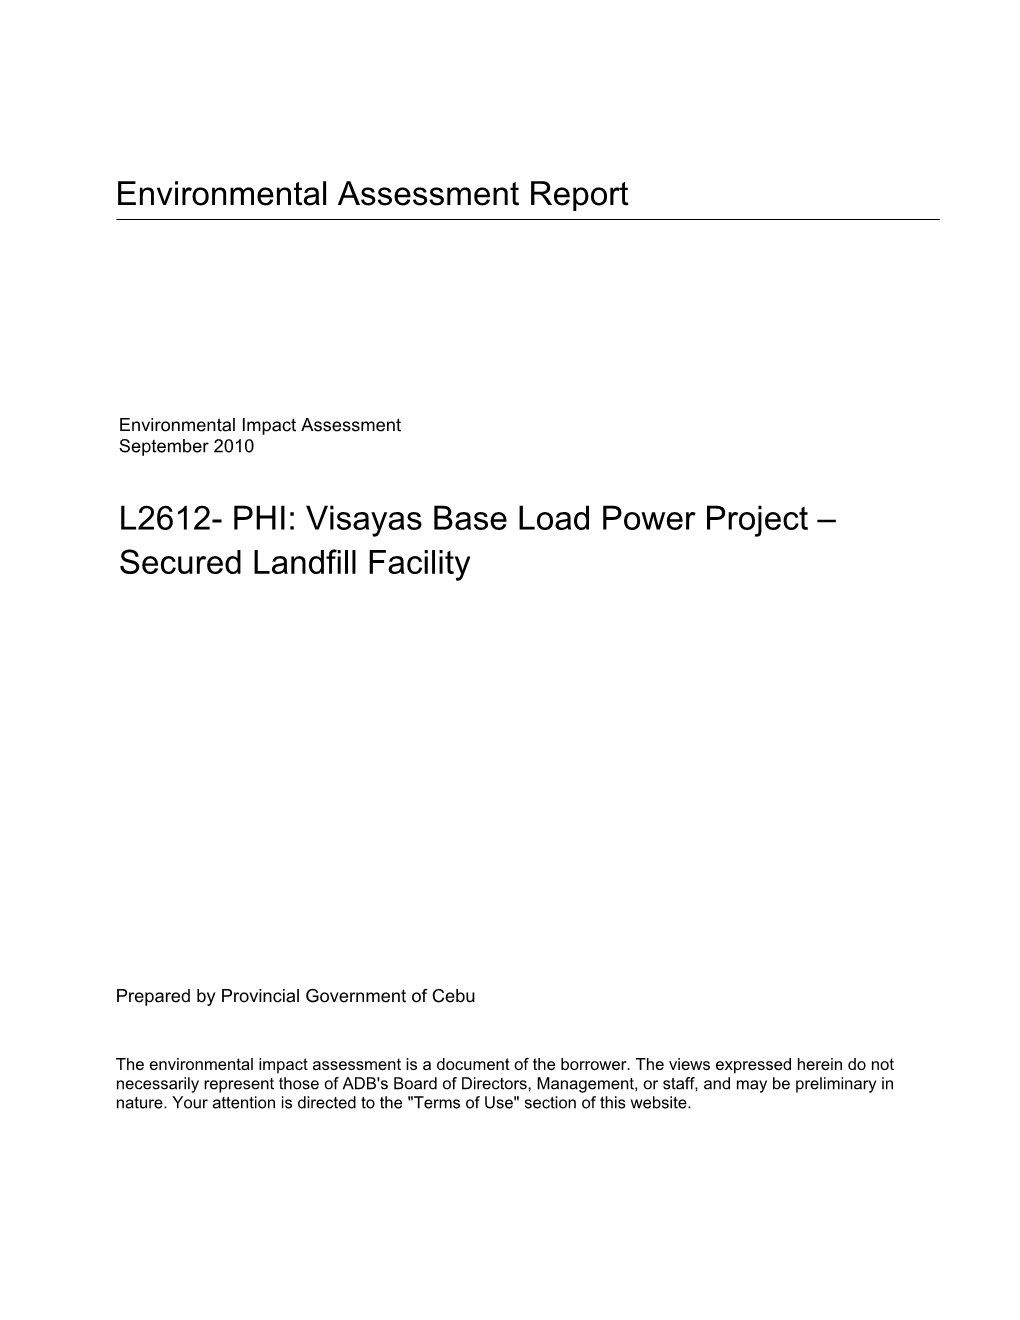 Environmental Impact Assessment September 2010